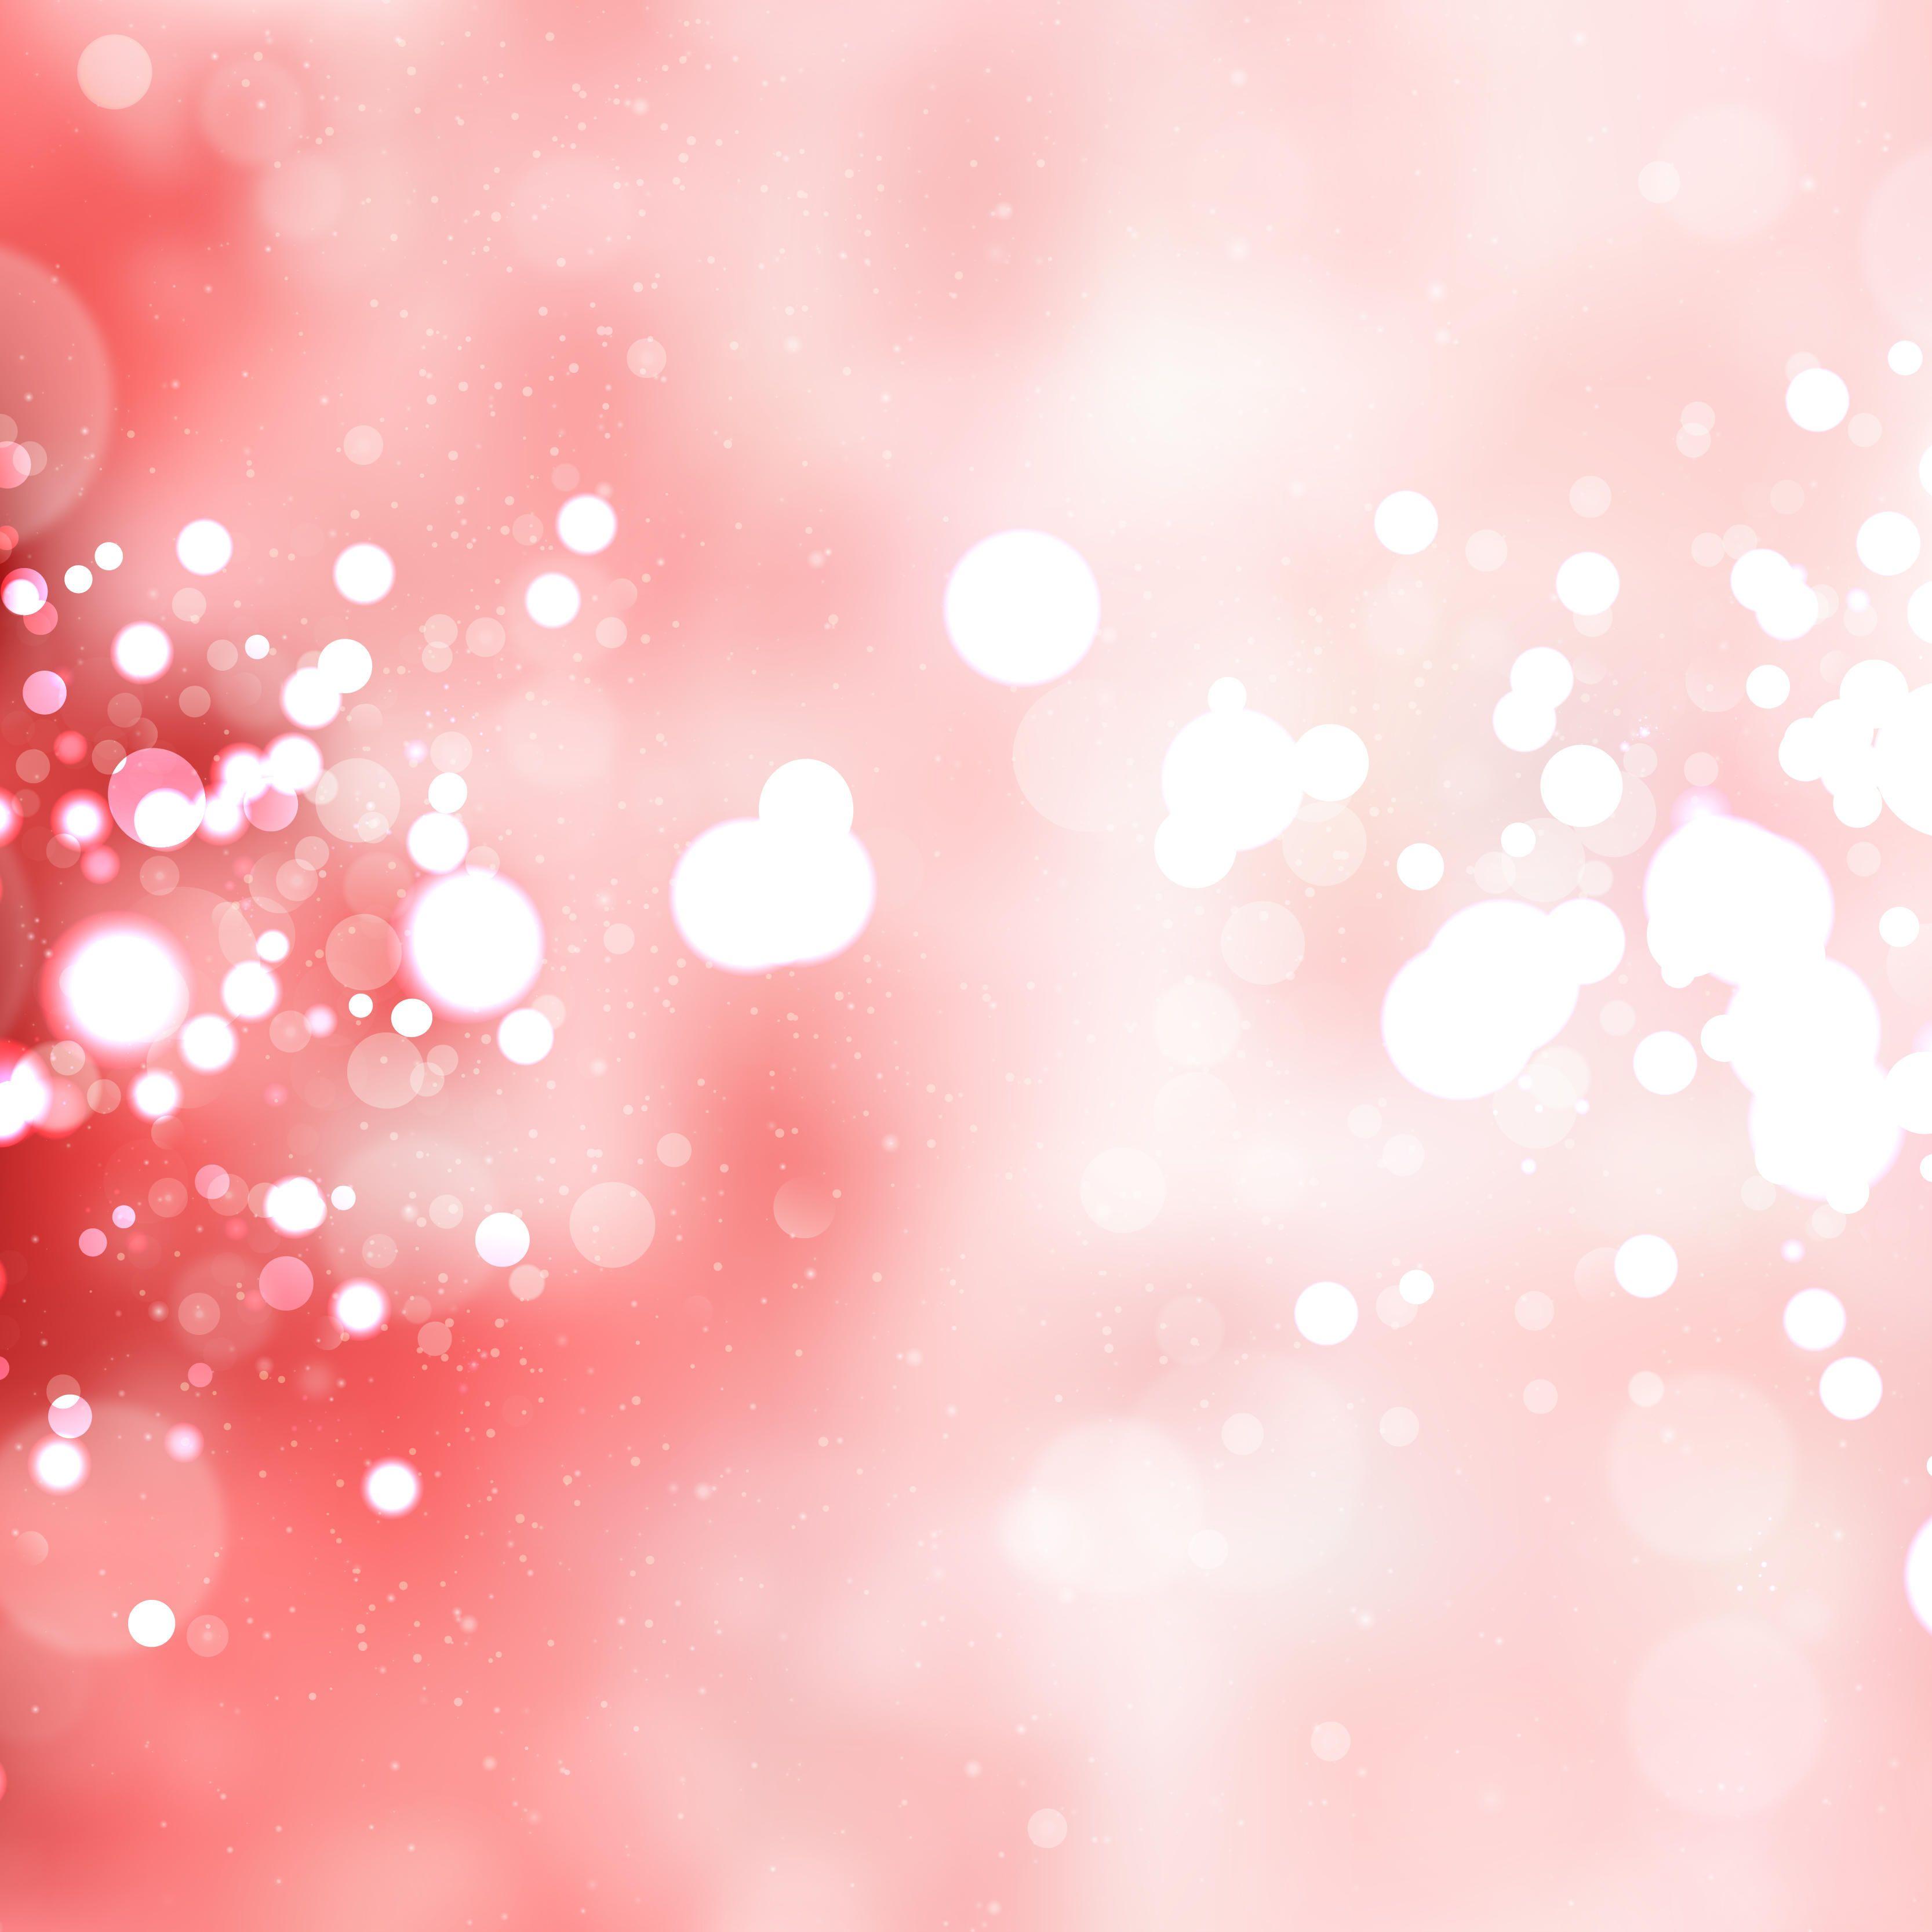 Pink Background Vectors. Download Free Vector Art & Graphics